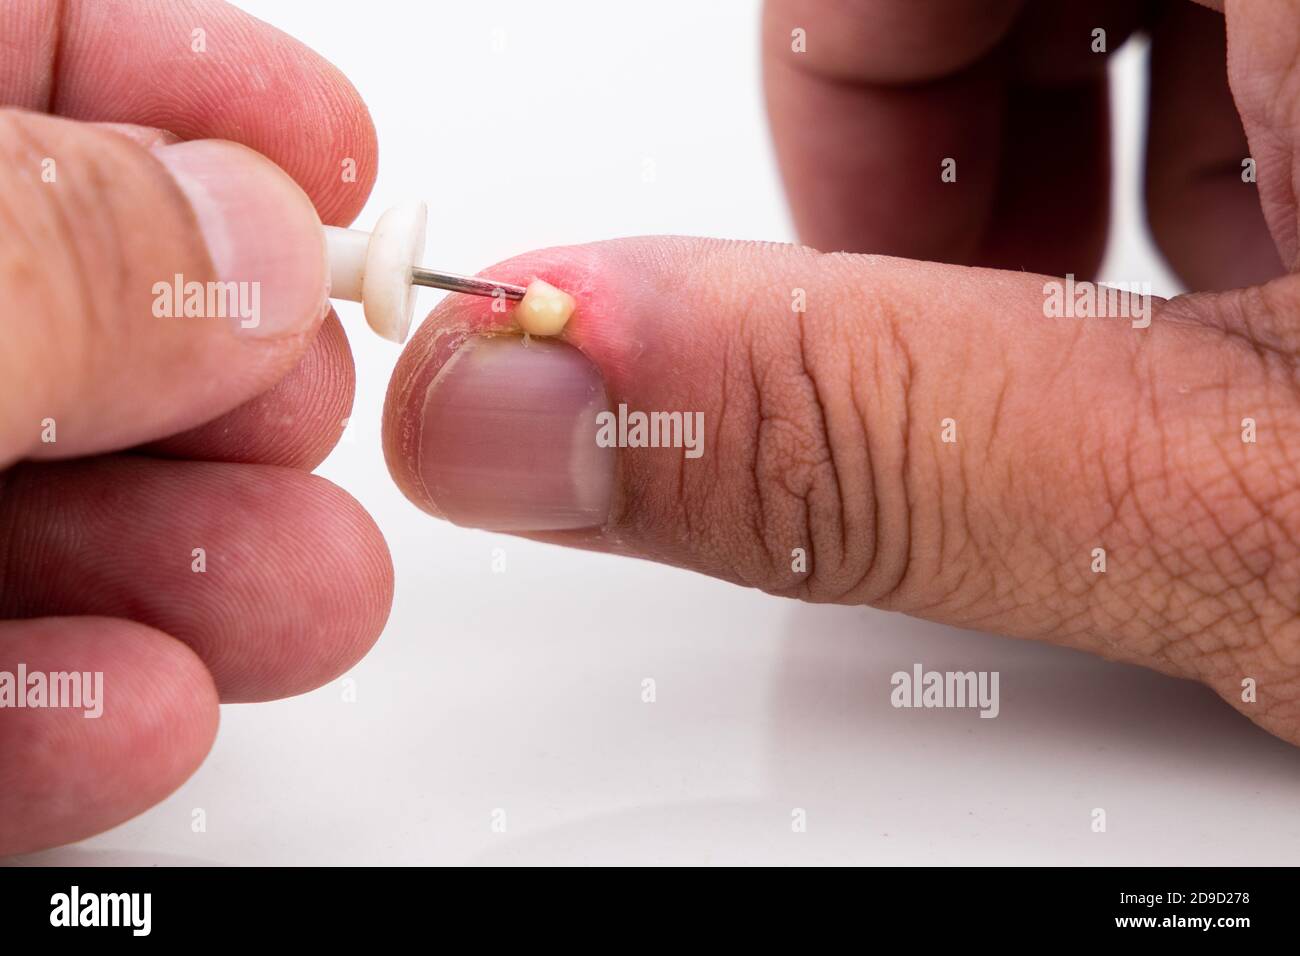 Serie von schmerzhaften Fingernagel Haut Infektion mit Eiter reatment  Stockfotografie - Alamy